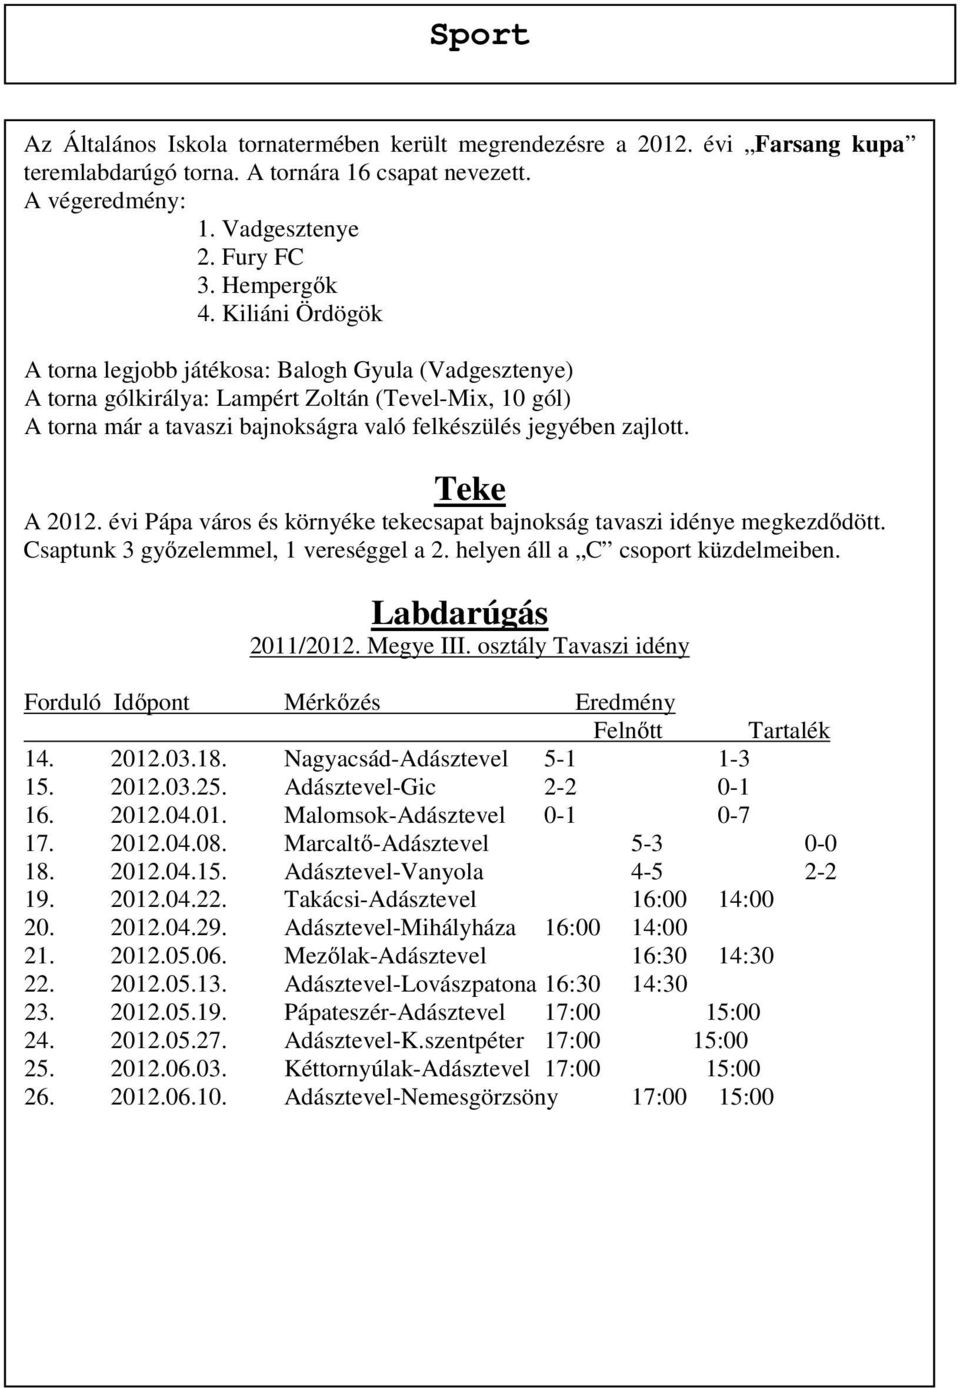 Teke A 2012. évi Pápa város és környéke tekecsapat bajnokság tavaszi idénye megkezdődött. Csaptunk 3 győzelemmel, 1 vereséggel a 2. helyen áll a C csoport küzdelmeiben. Labdarúgás 2011/2012.